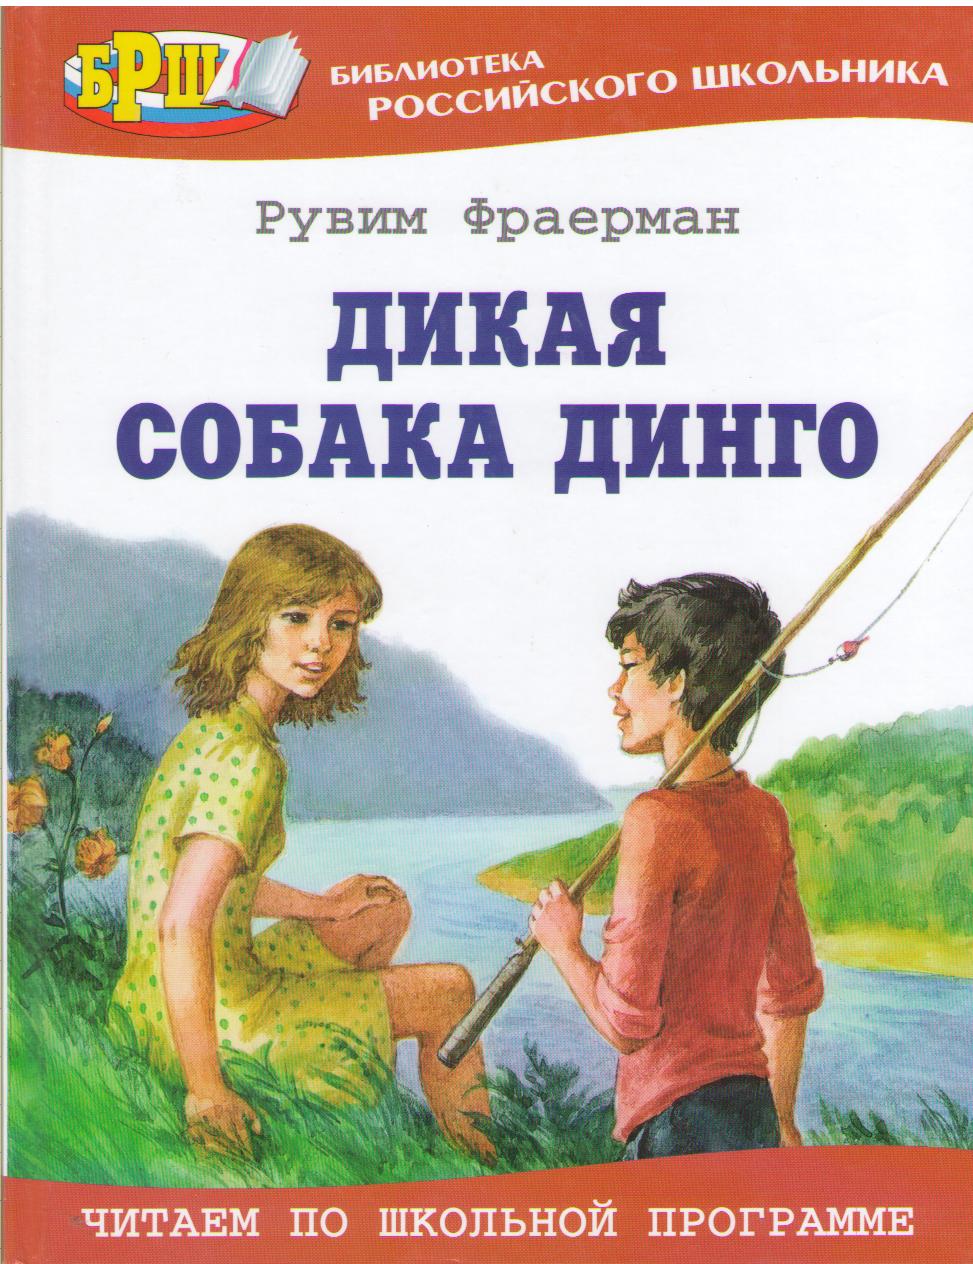 book 1